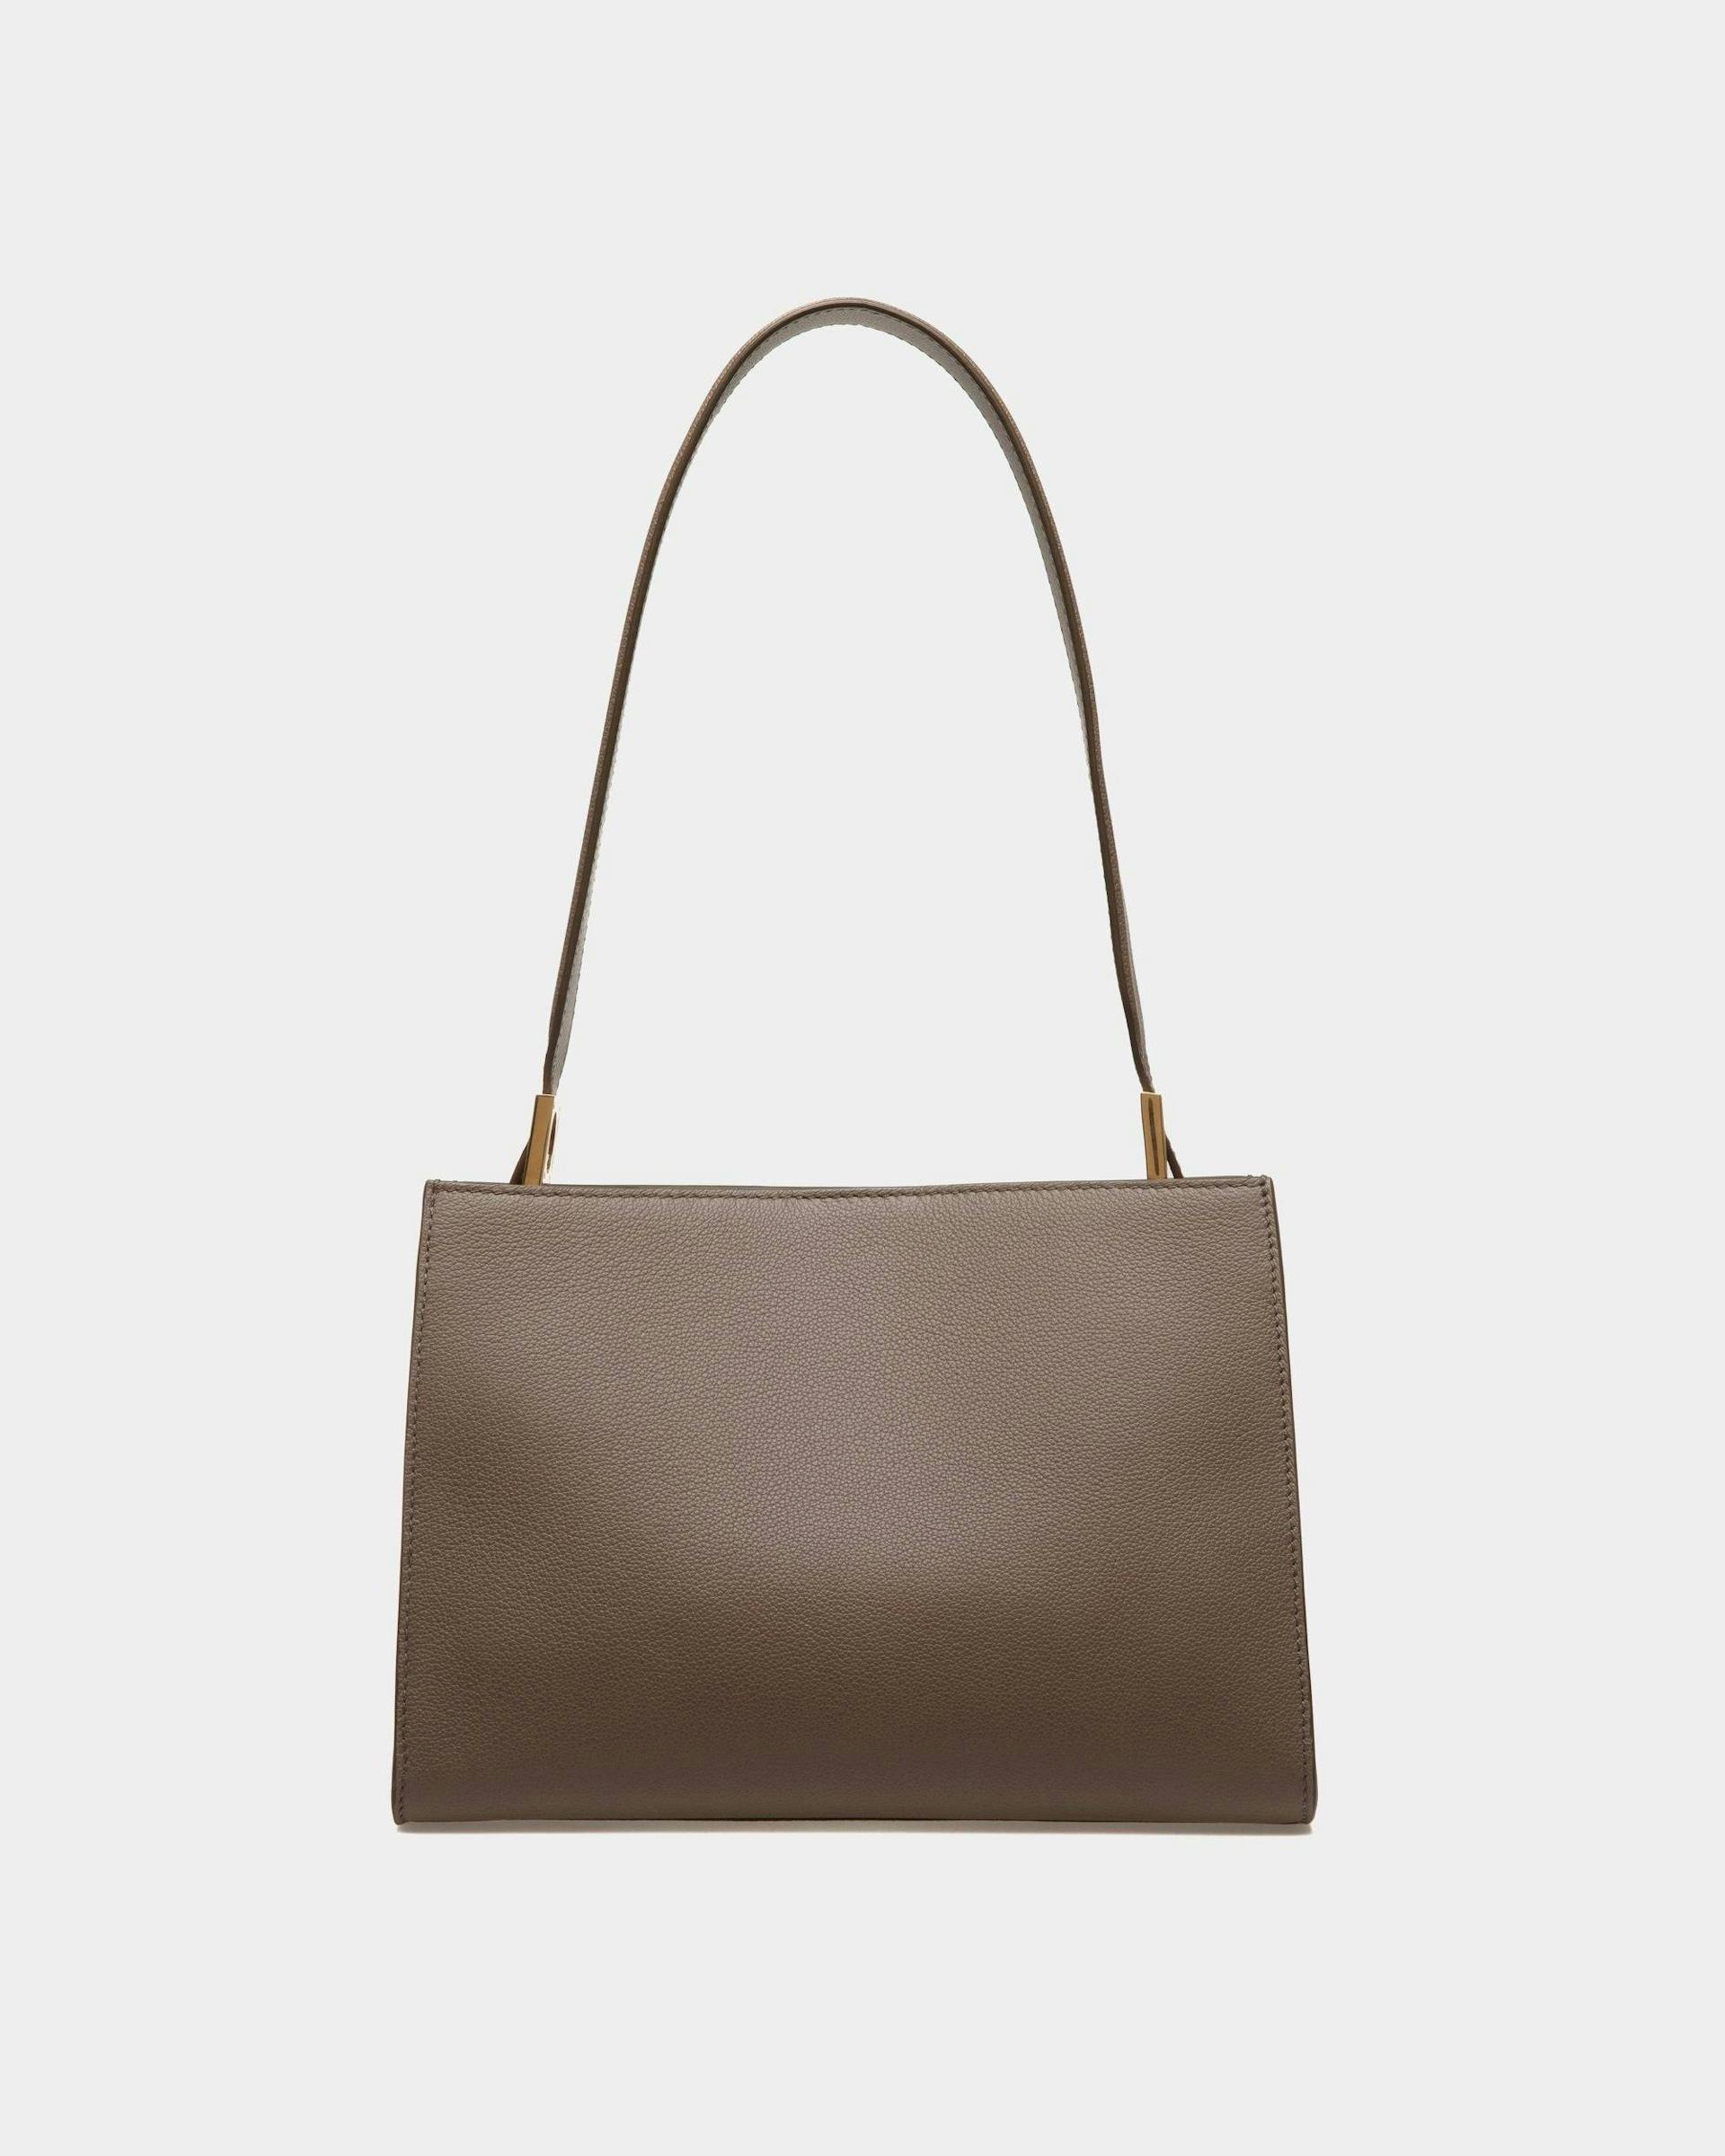 Women's Emblem Shoulder Bag in Beige Grained Leather | Bally | Still Life Back